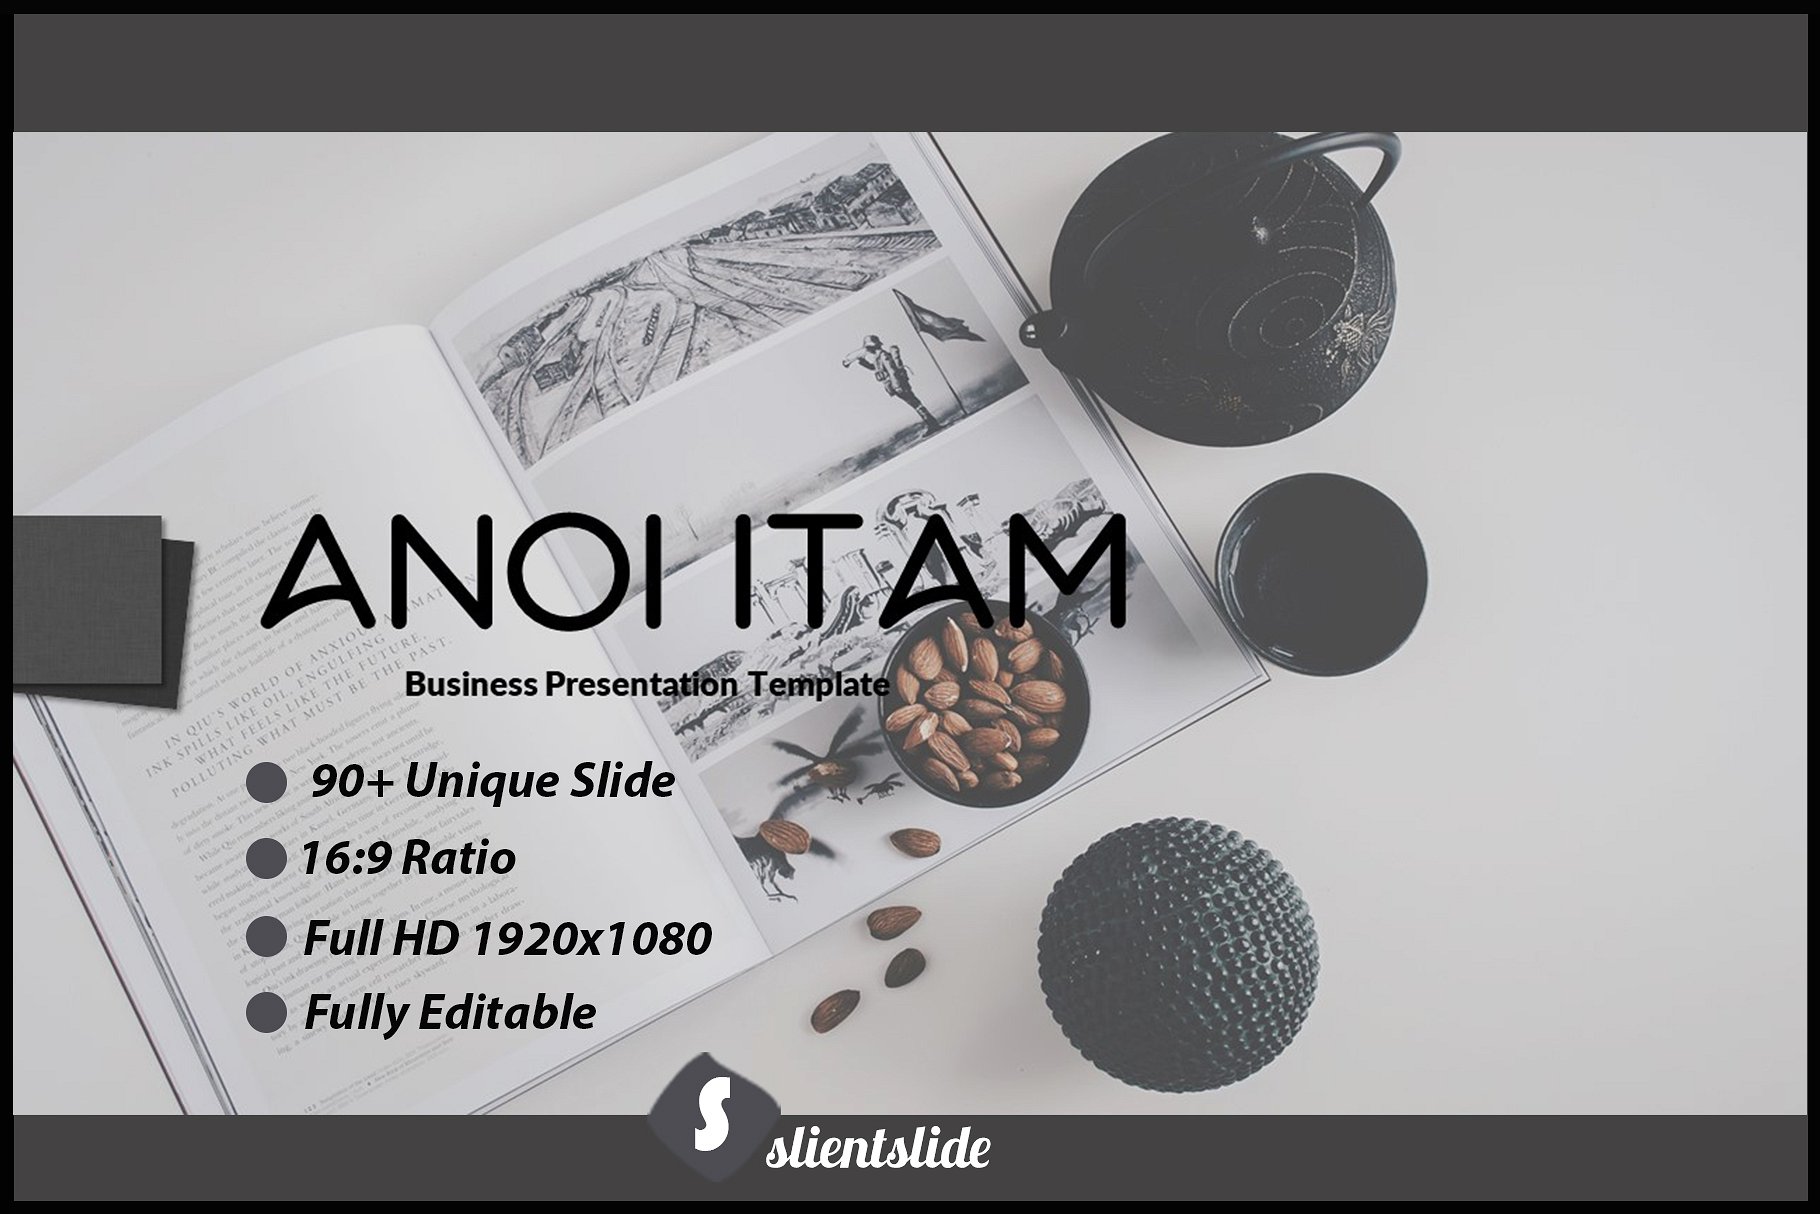 Anoi Itam创意主题 Keynote 模版插图